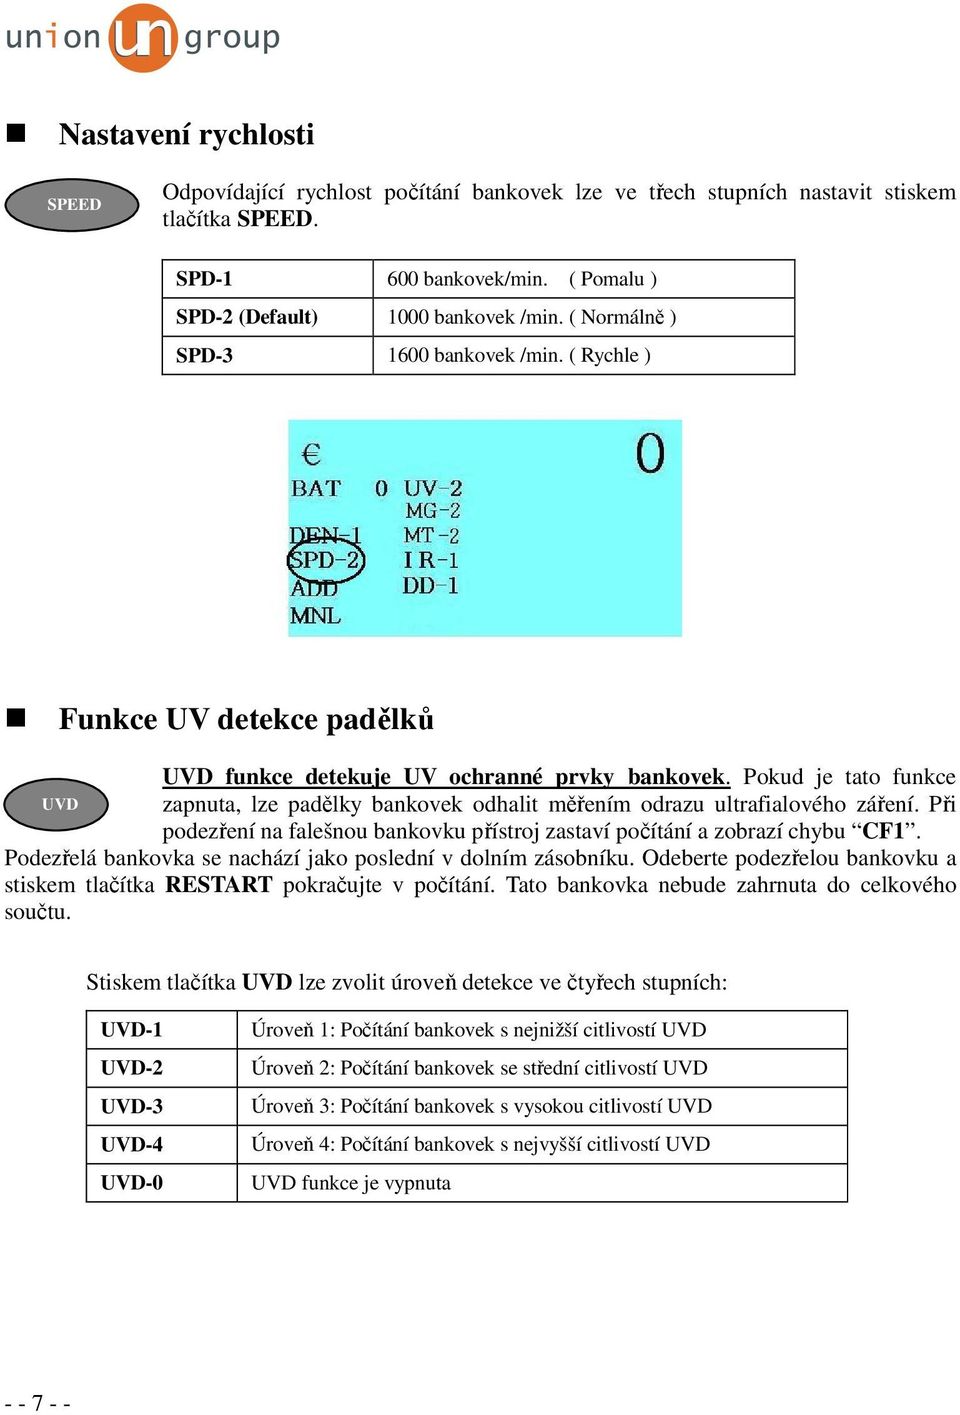 Pokud je tato funkce UVD zapnuta, lze padělky bankovek odhalit měřením odrazu ultrafialového záření. Při podezření na falešnou bankovku přístroj zastaví počítání a zobrazí chybu CF1.